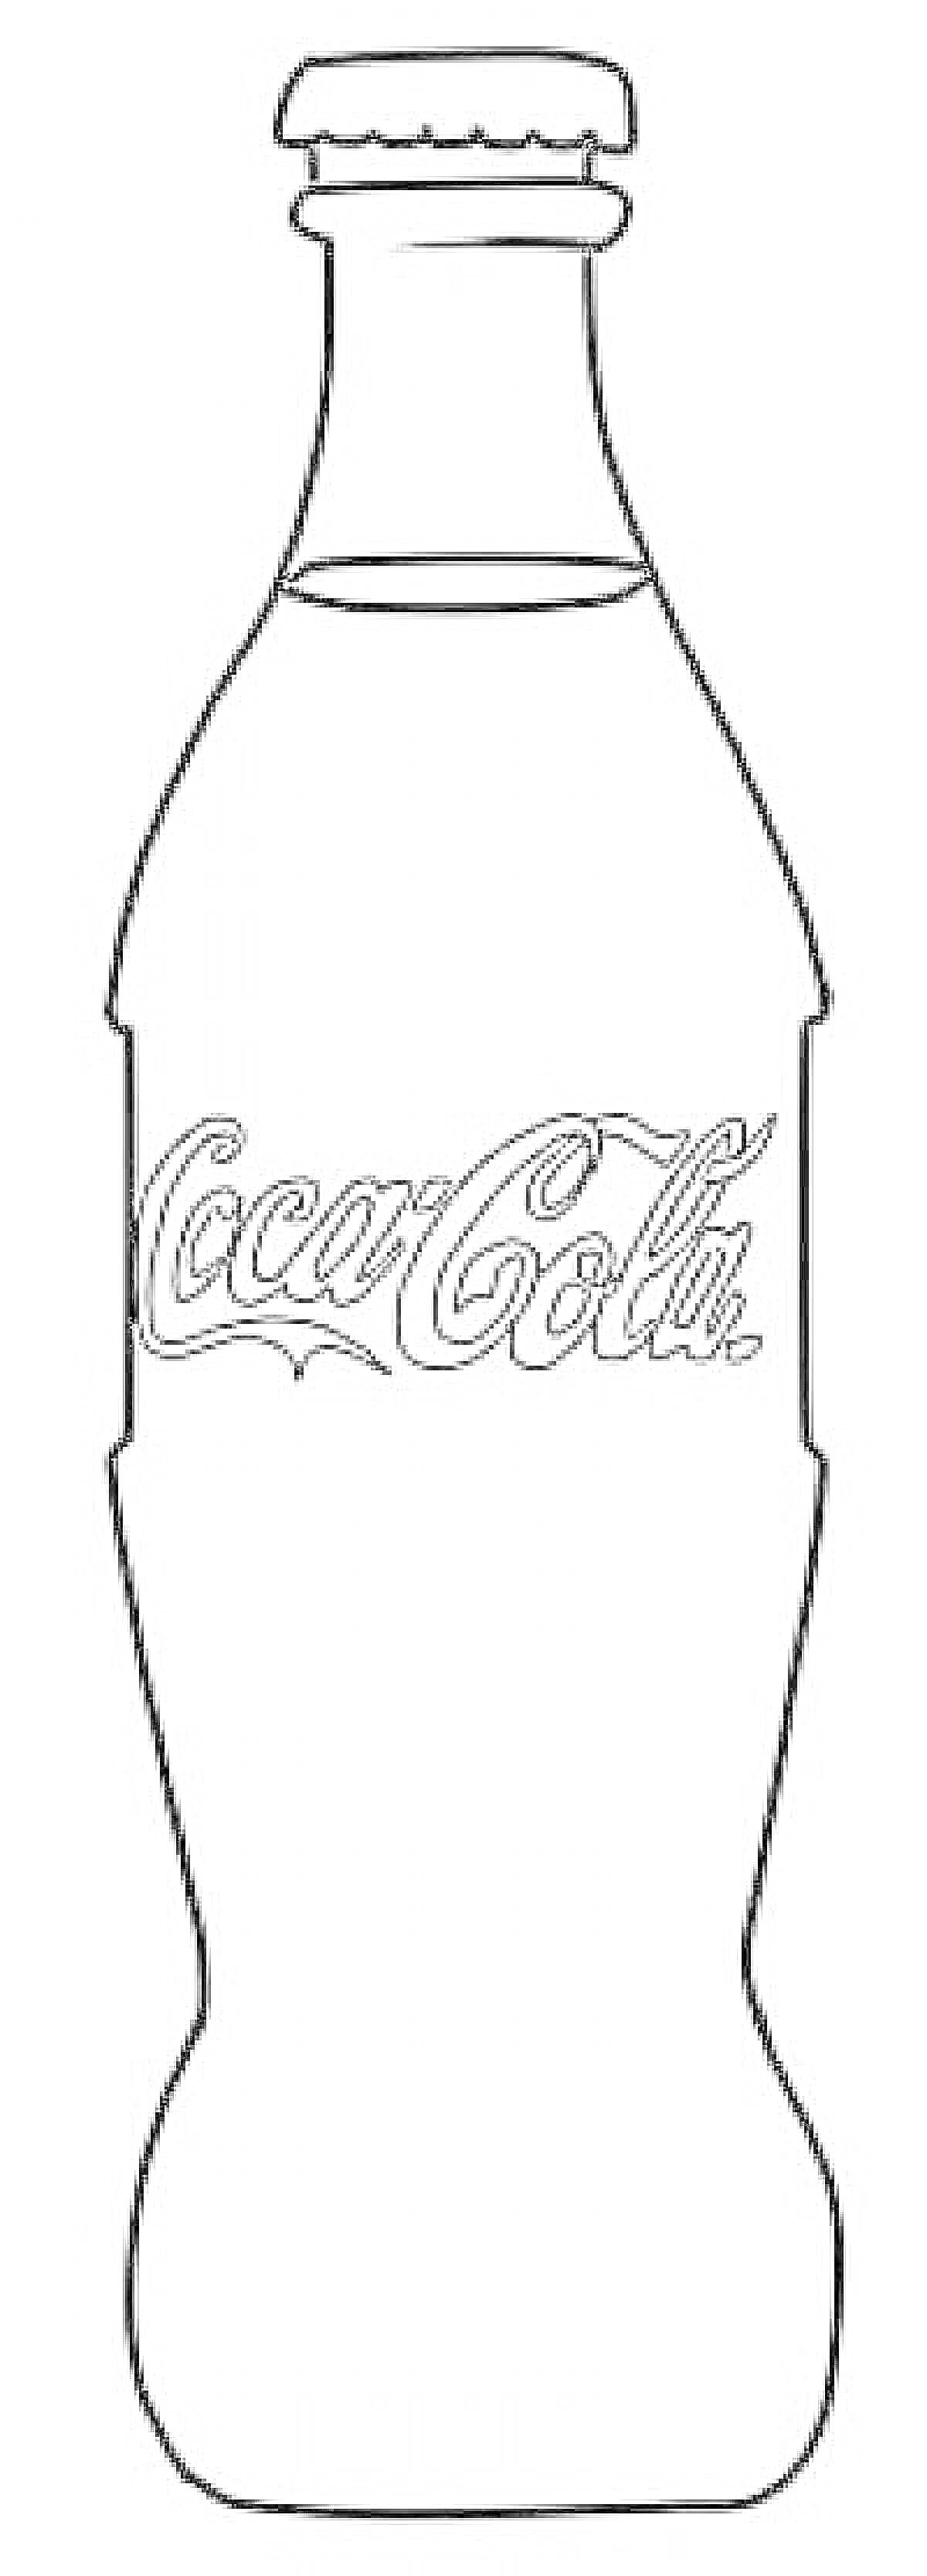 бутылка Кока-Колы с наклейкой Coca-Cola и крышкой